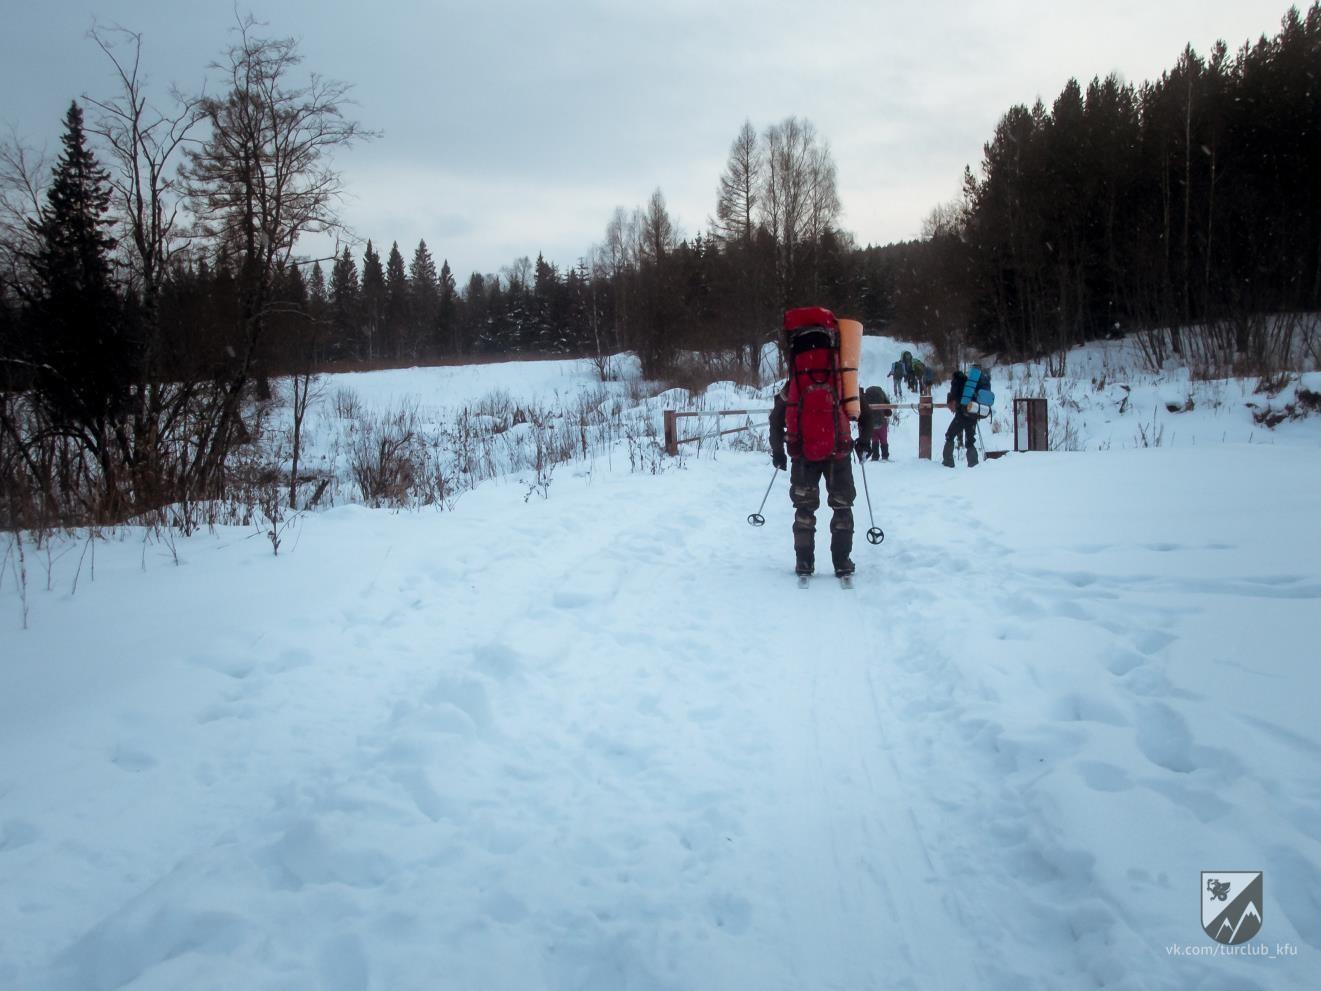 Отчет о лыжном спортивном походе 1 категории сложности по Южному Уралу Нац. Парк Зюраткуль